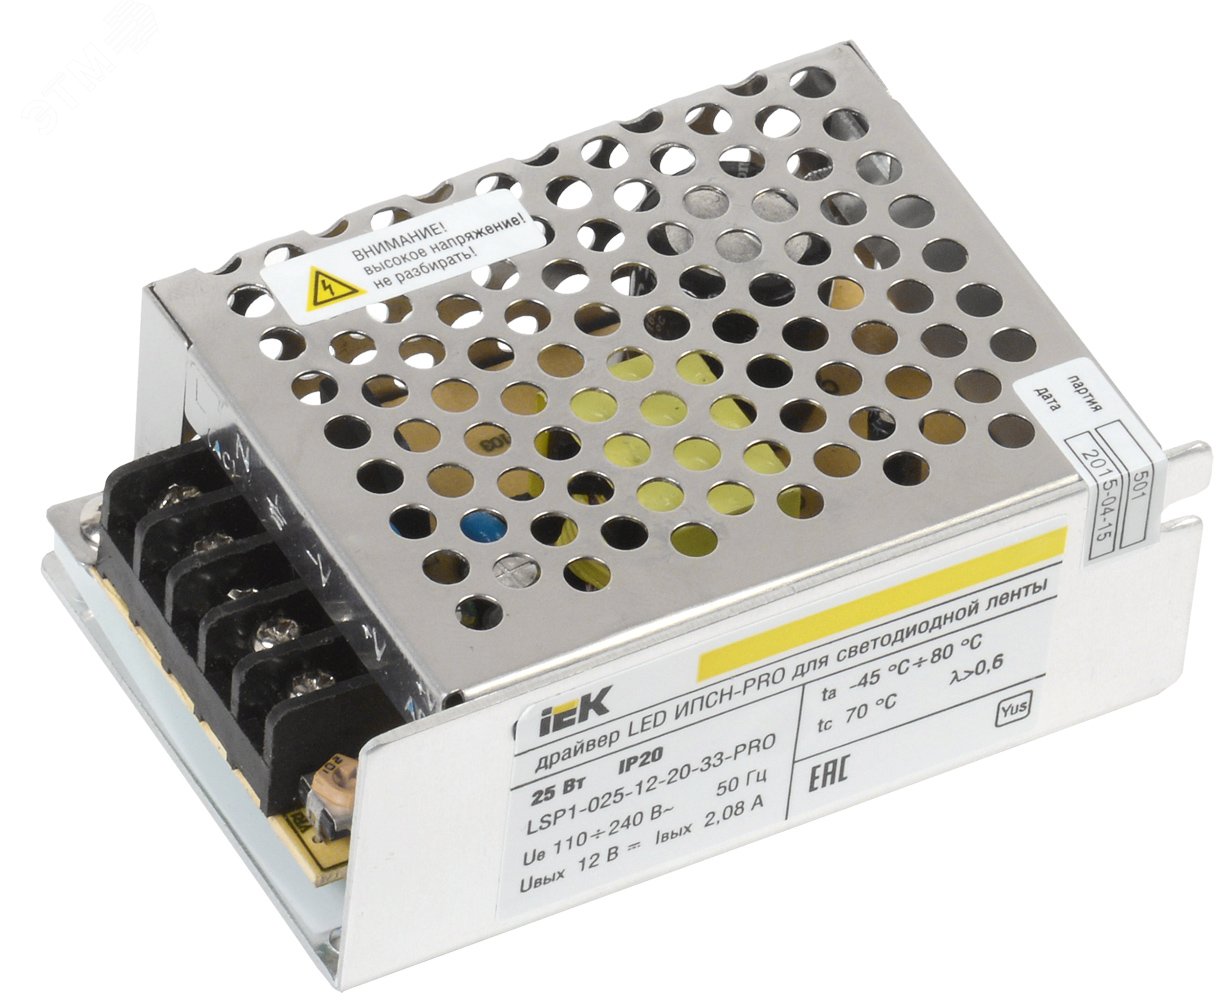 Драйвер LED ИПСН-PRO 25Вт 12 В блок - клеммы IP20 IEK LSP1-025-12-20-33-PRO IEK - превью 2